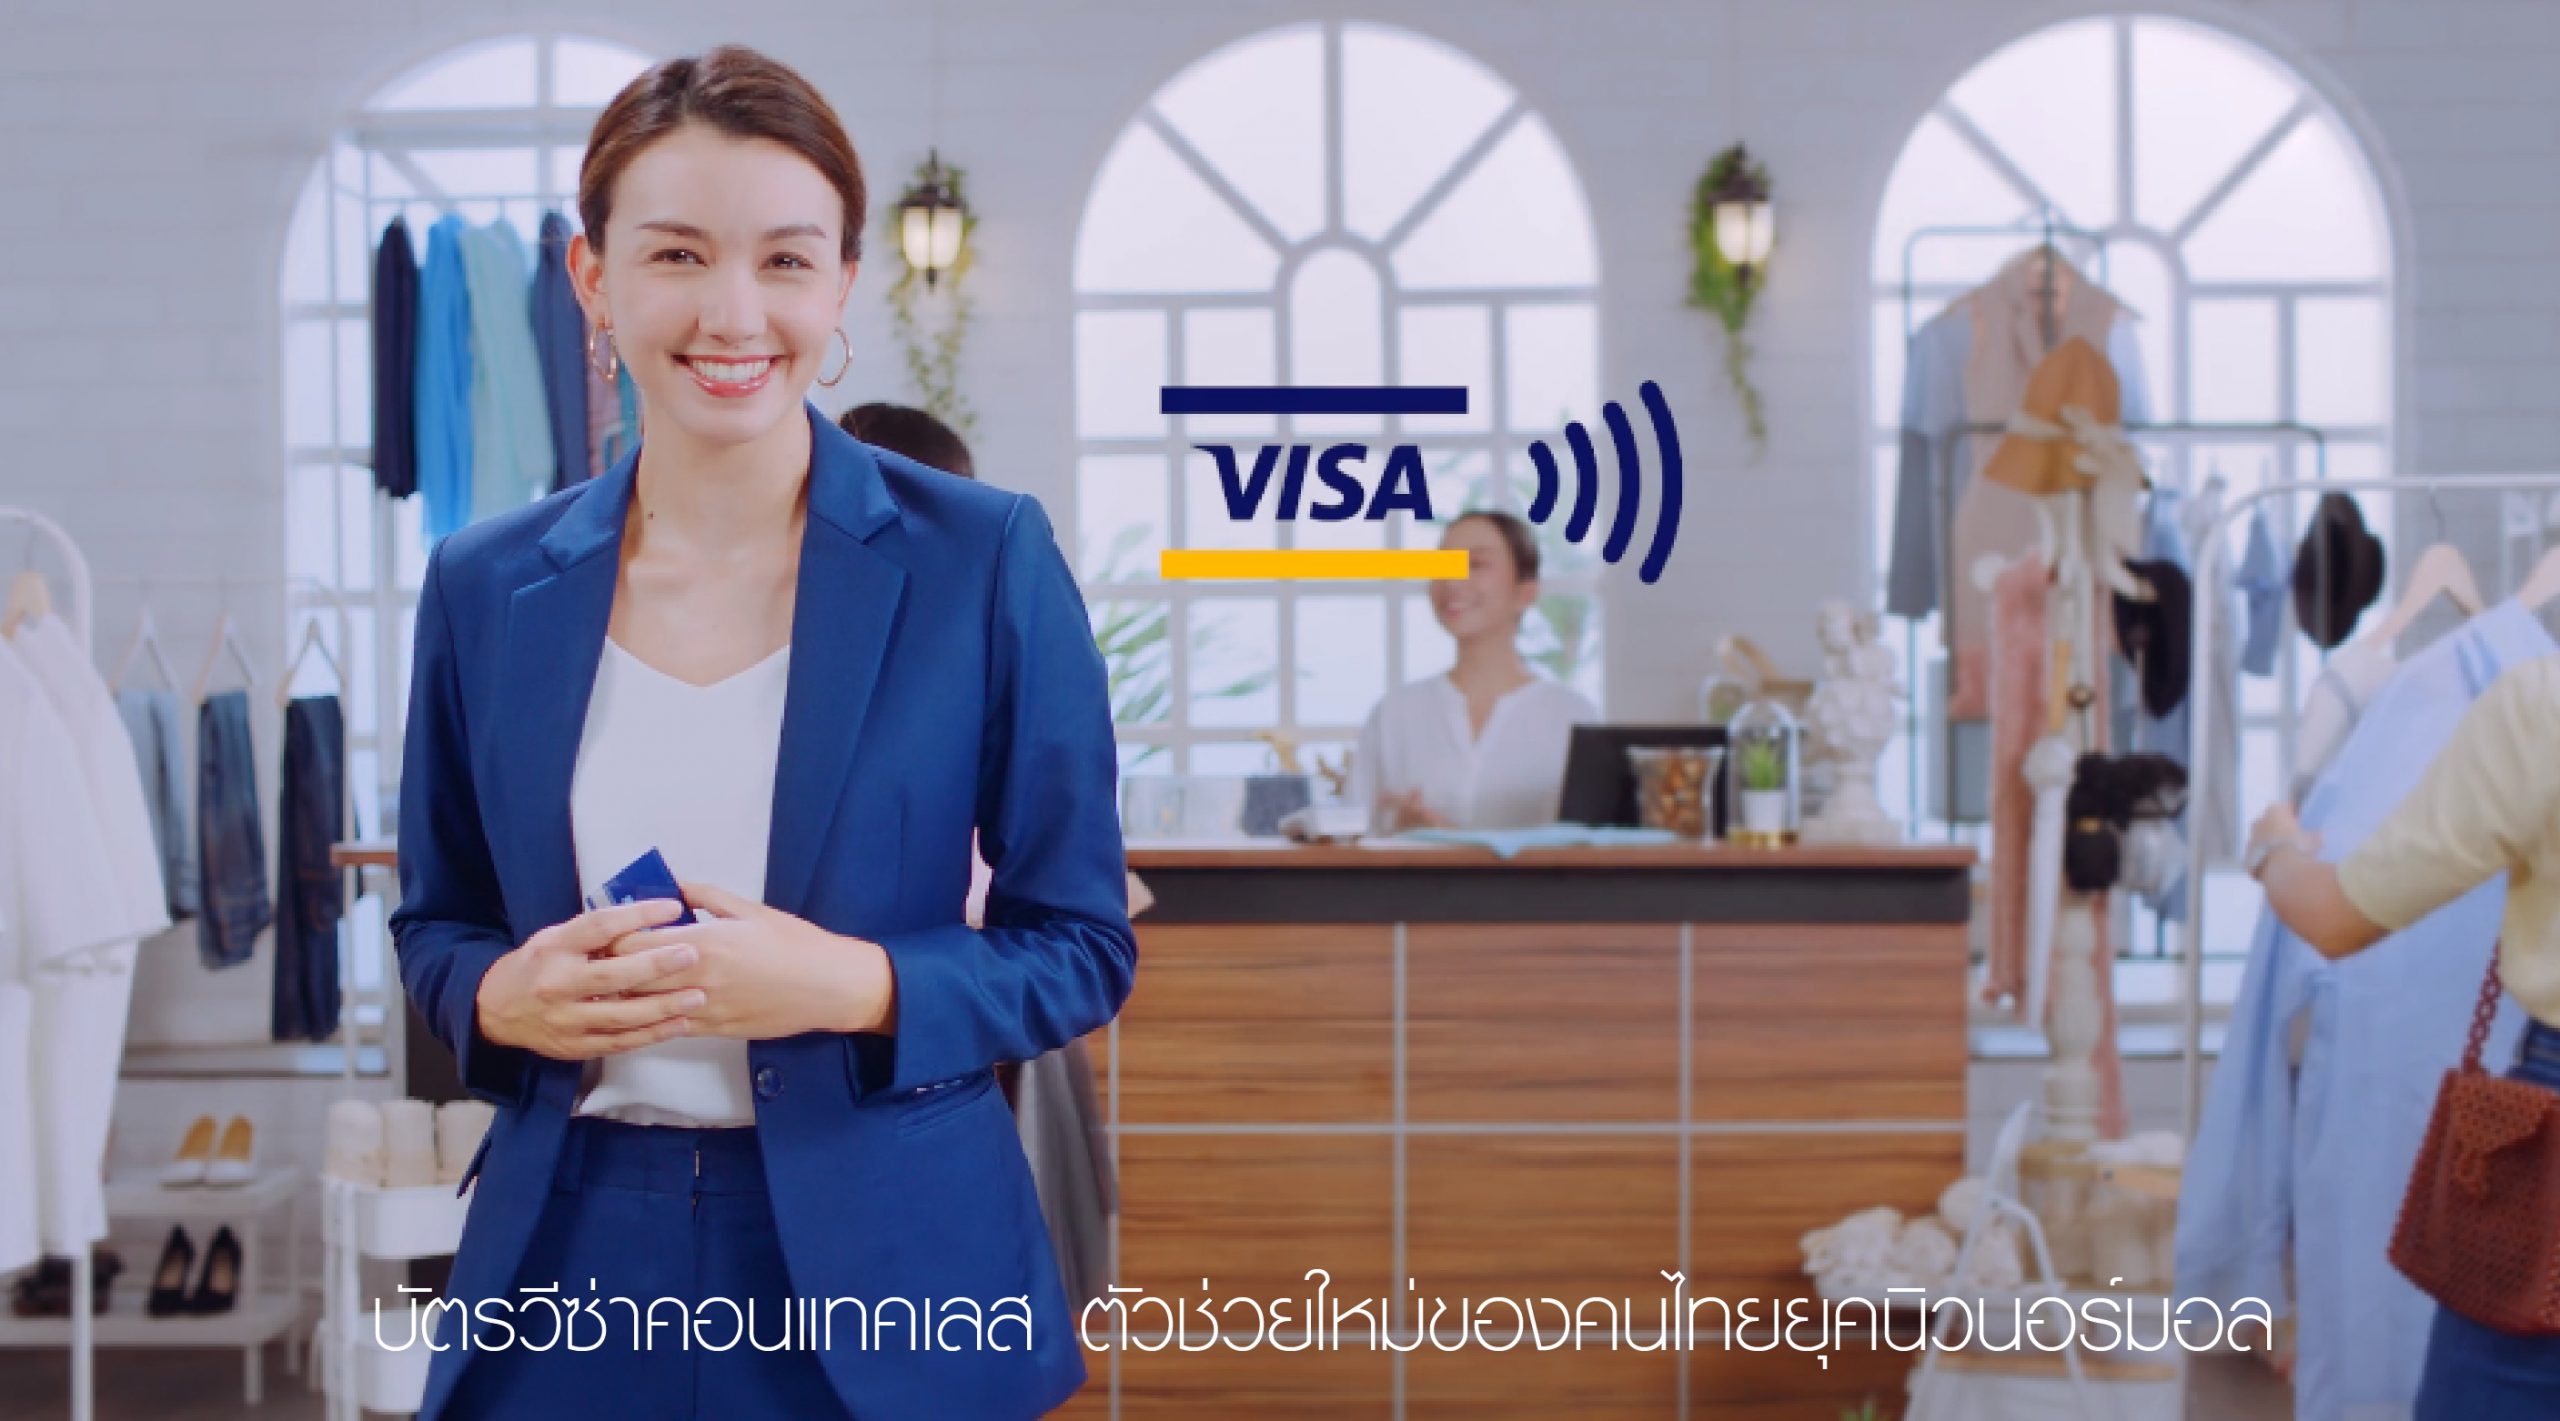 วีซ่า เปิดตัววิดีโอ แตะเพื่อจ่าย ตัวช่วยใหม่สำหรับคนไทยเพื่อปรับตัวเข้าสู่ชีวิตวิถีใหม่